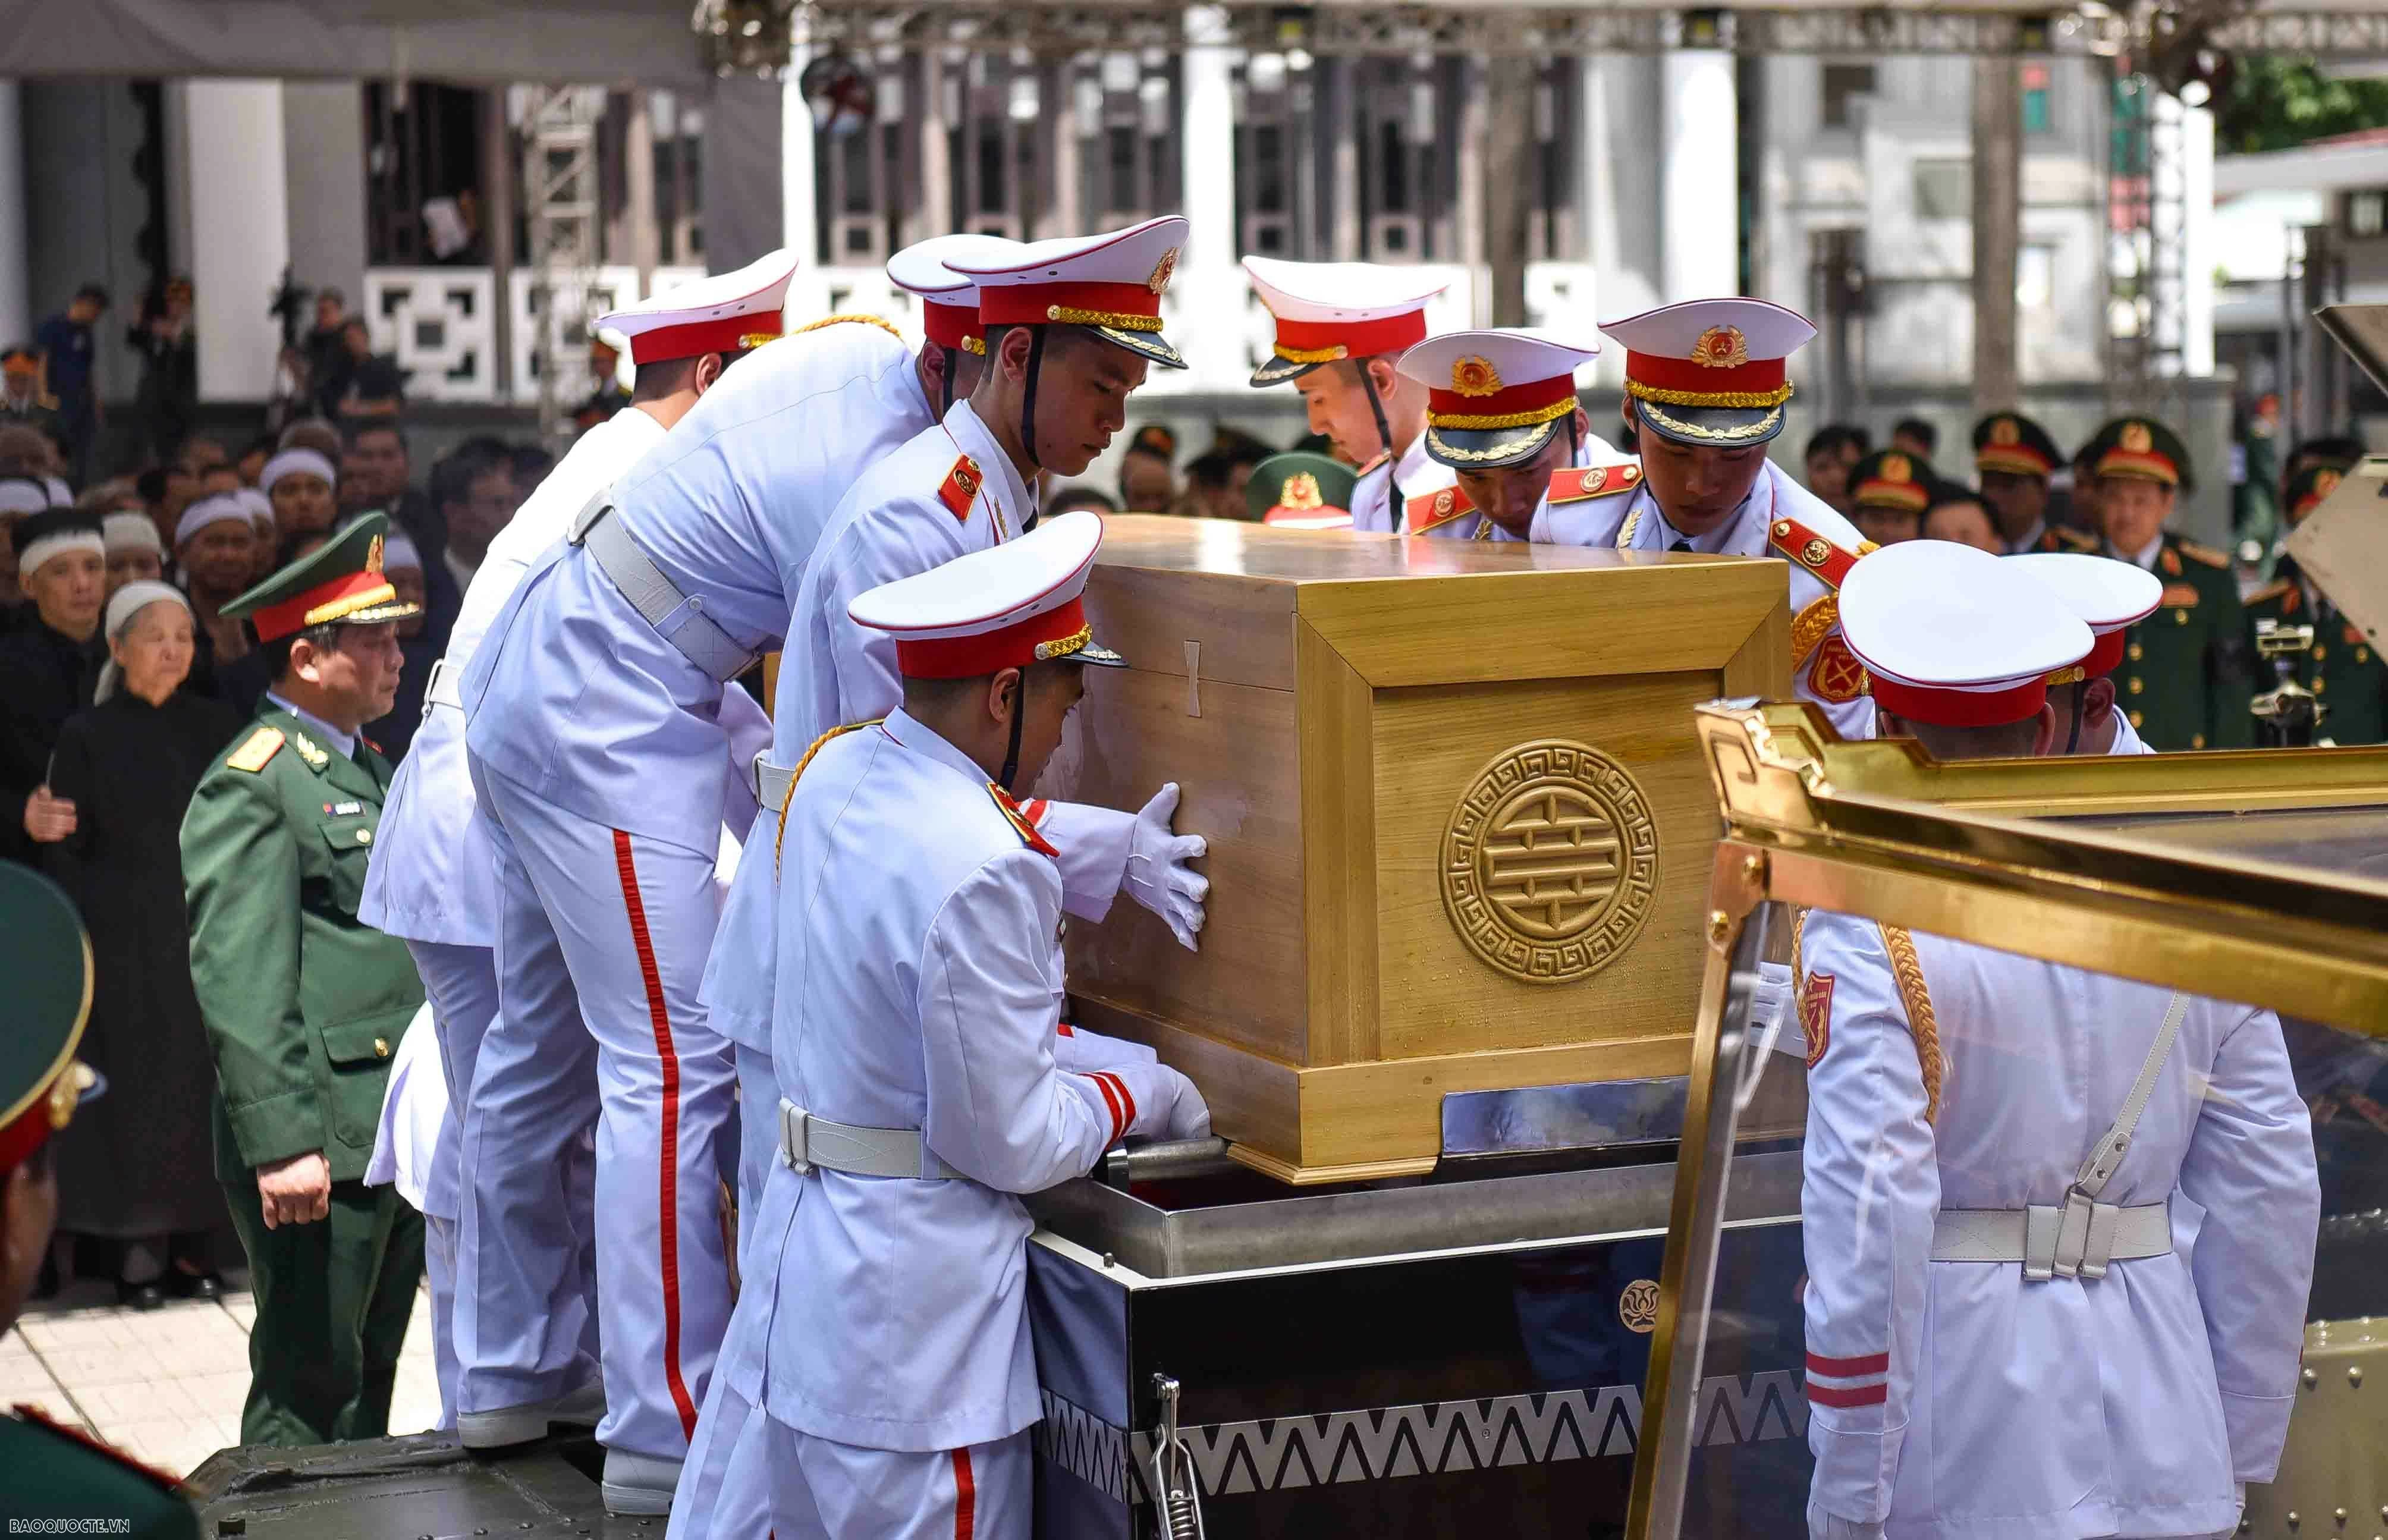 Lễ truy điệu Tổng Bí thư Nguyễn Phú Trọng